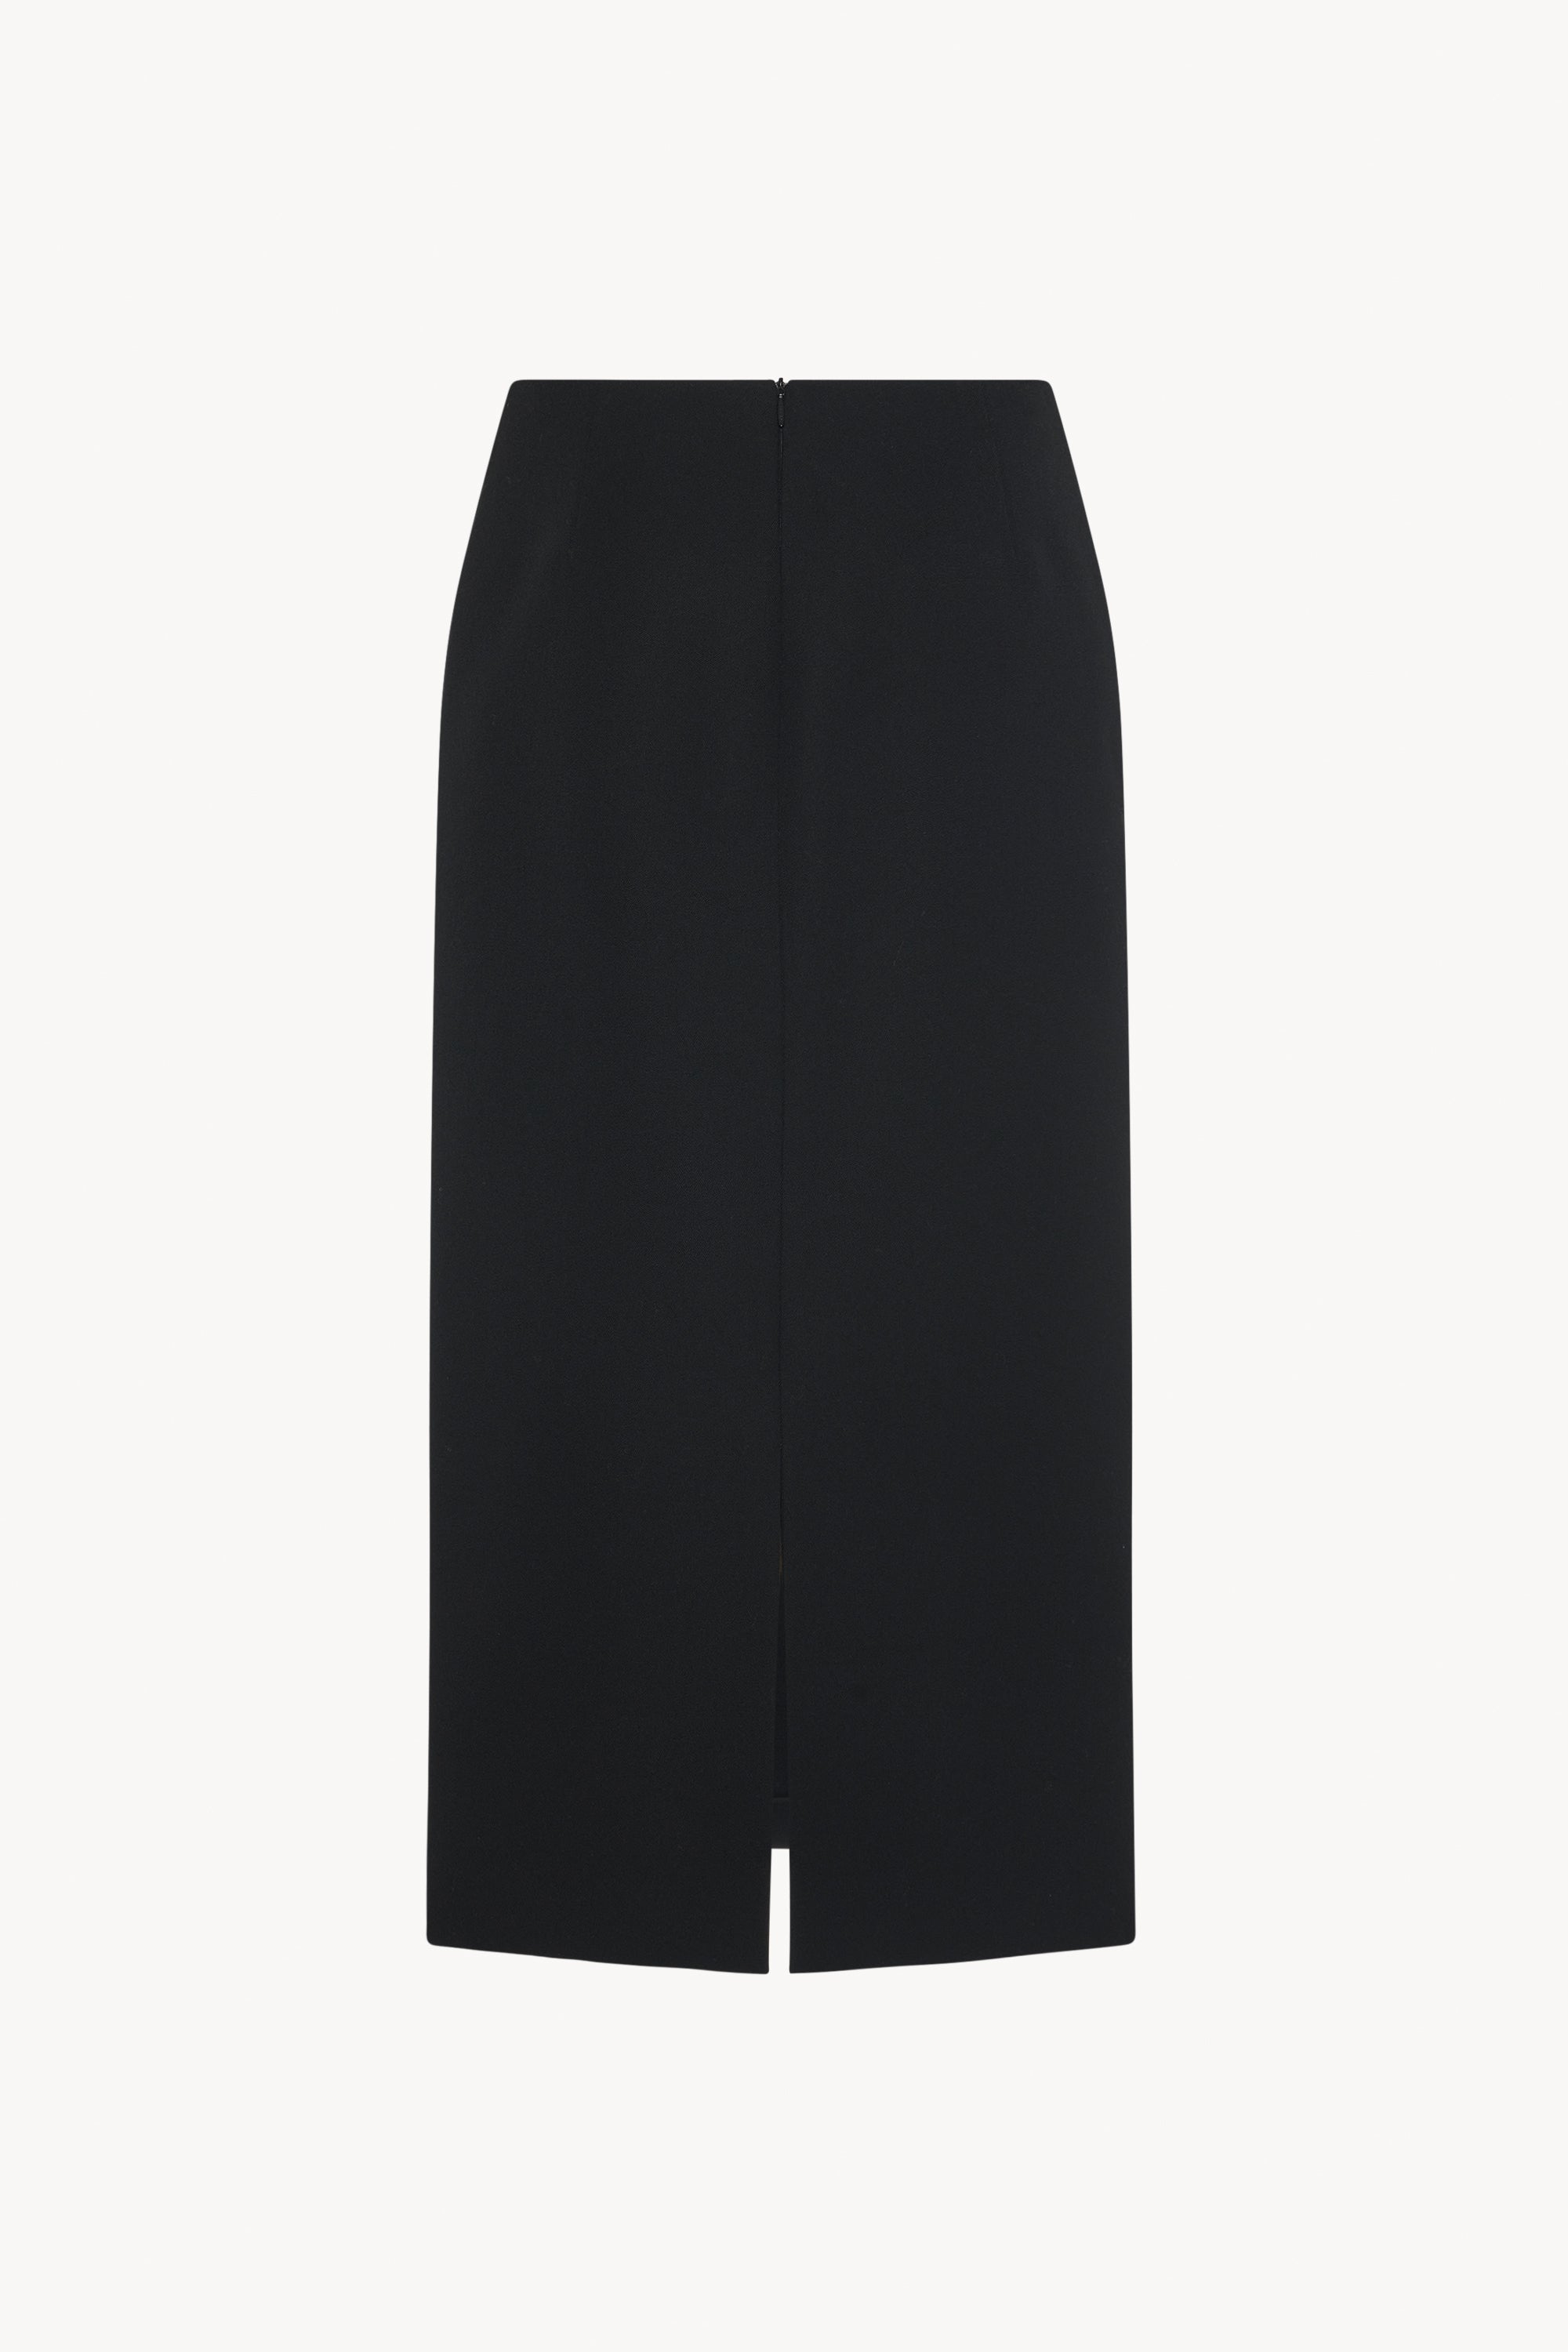 Kassie Skirt Black in Wool – The Row